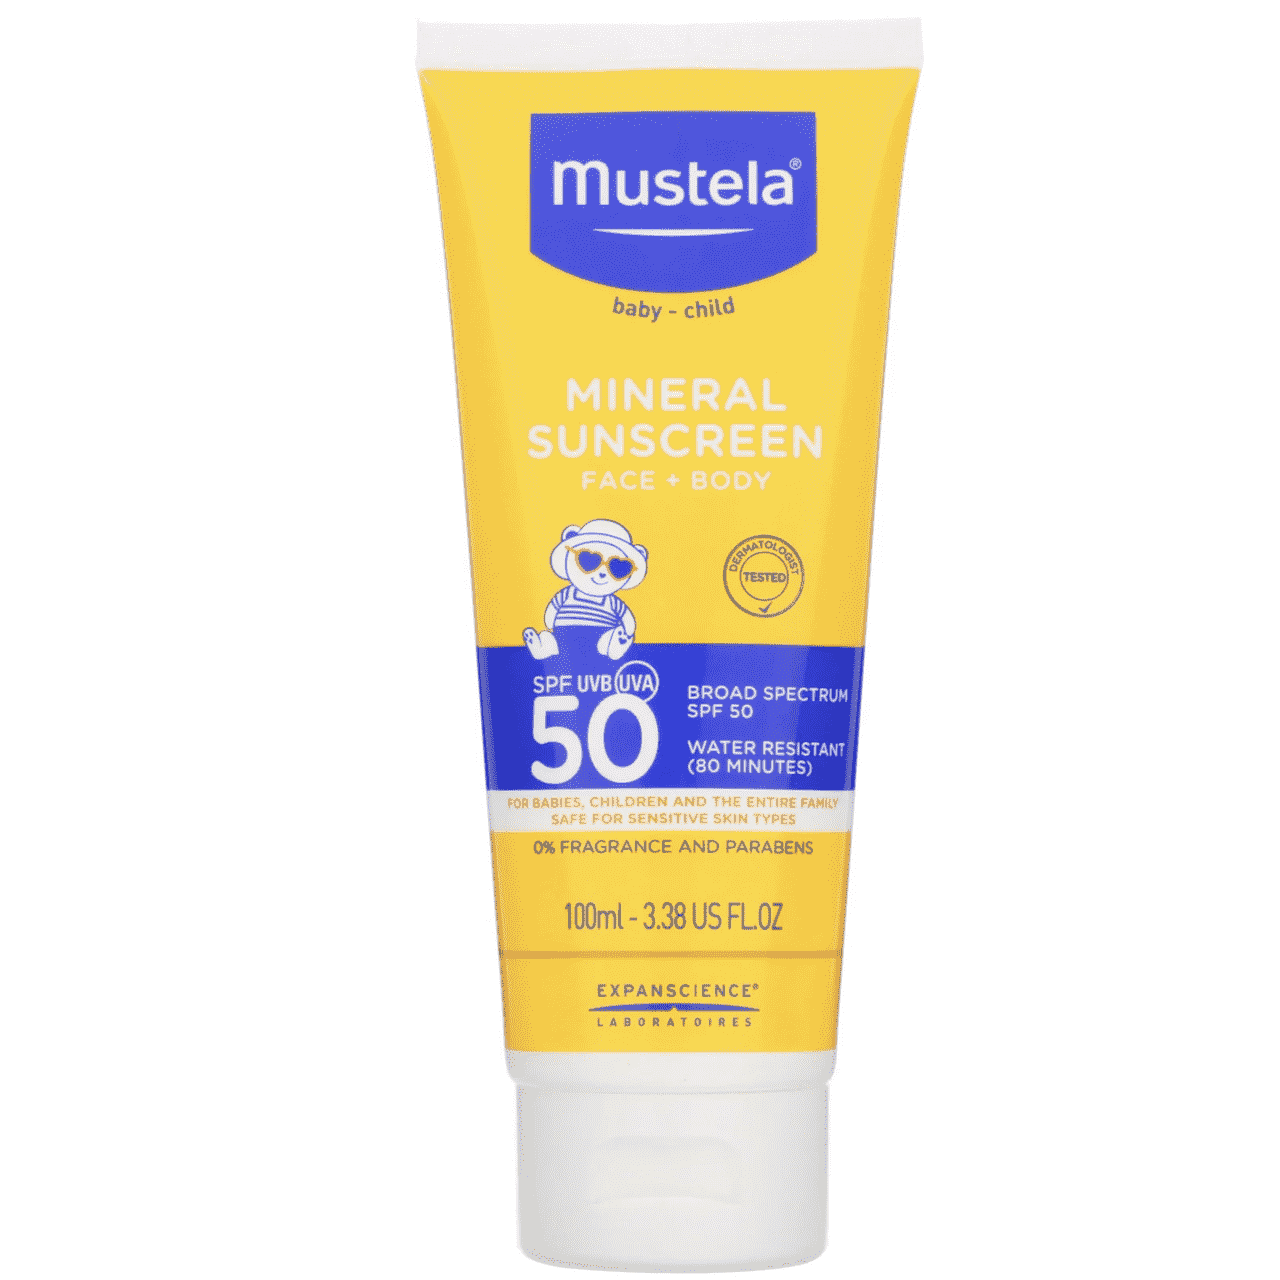 Eine gelbe und blaue Tube der Mustela Mineral Sunscreen Lotion Face + Body SPF 50 auf weißem Hintergrund.